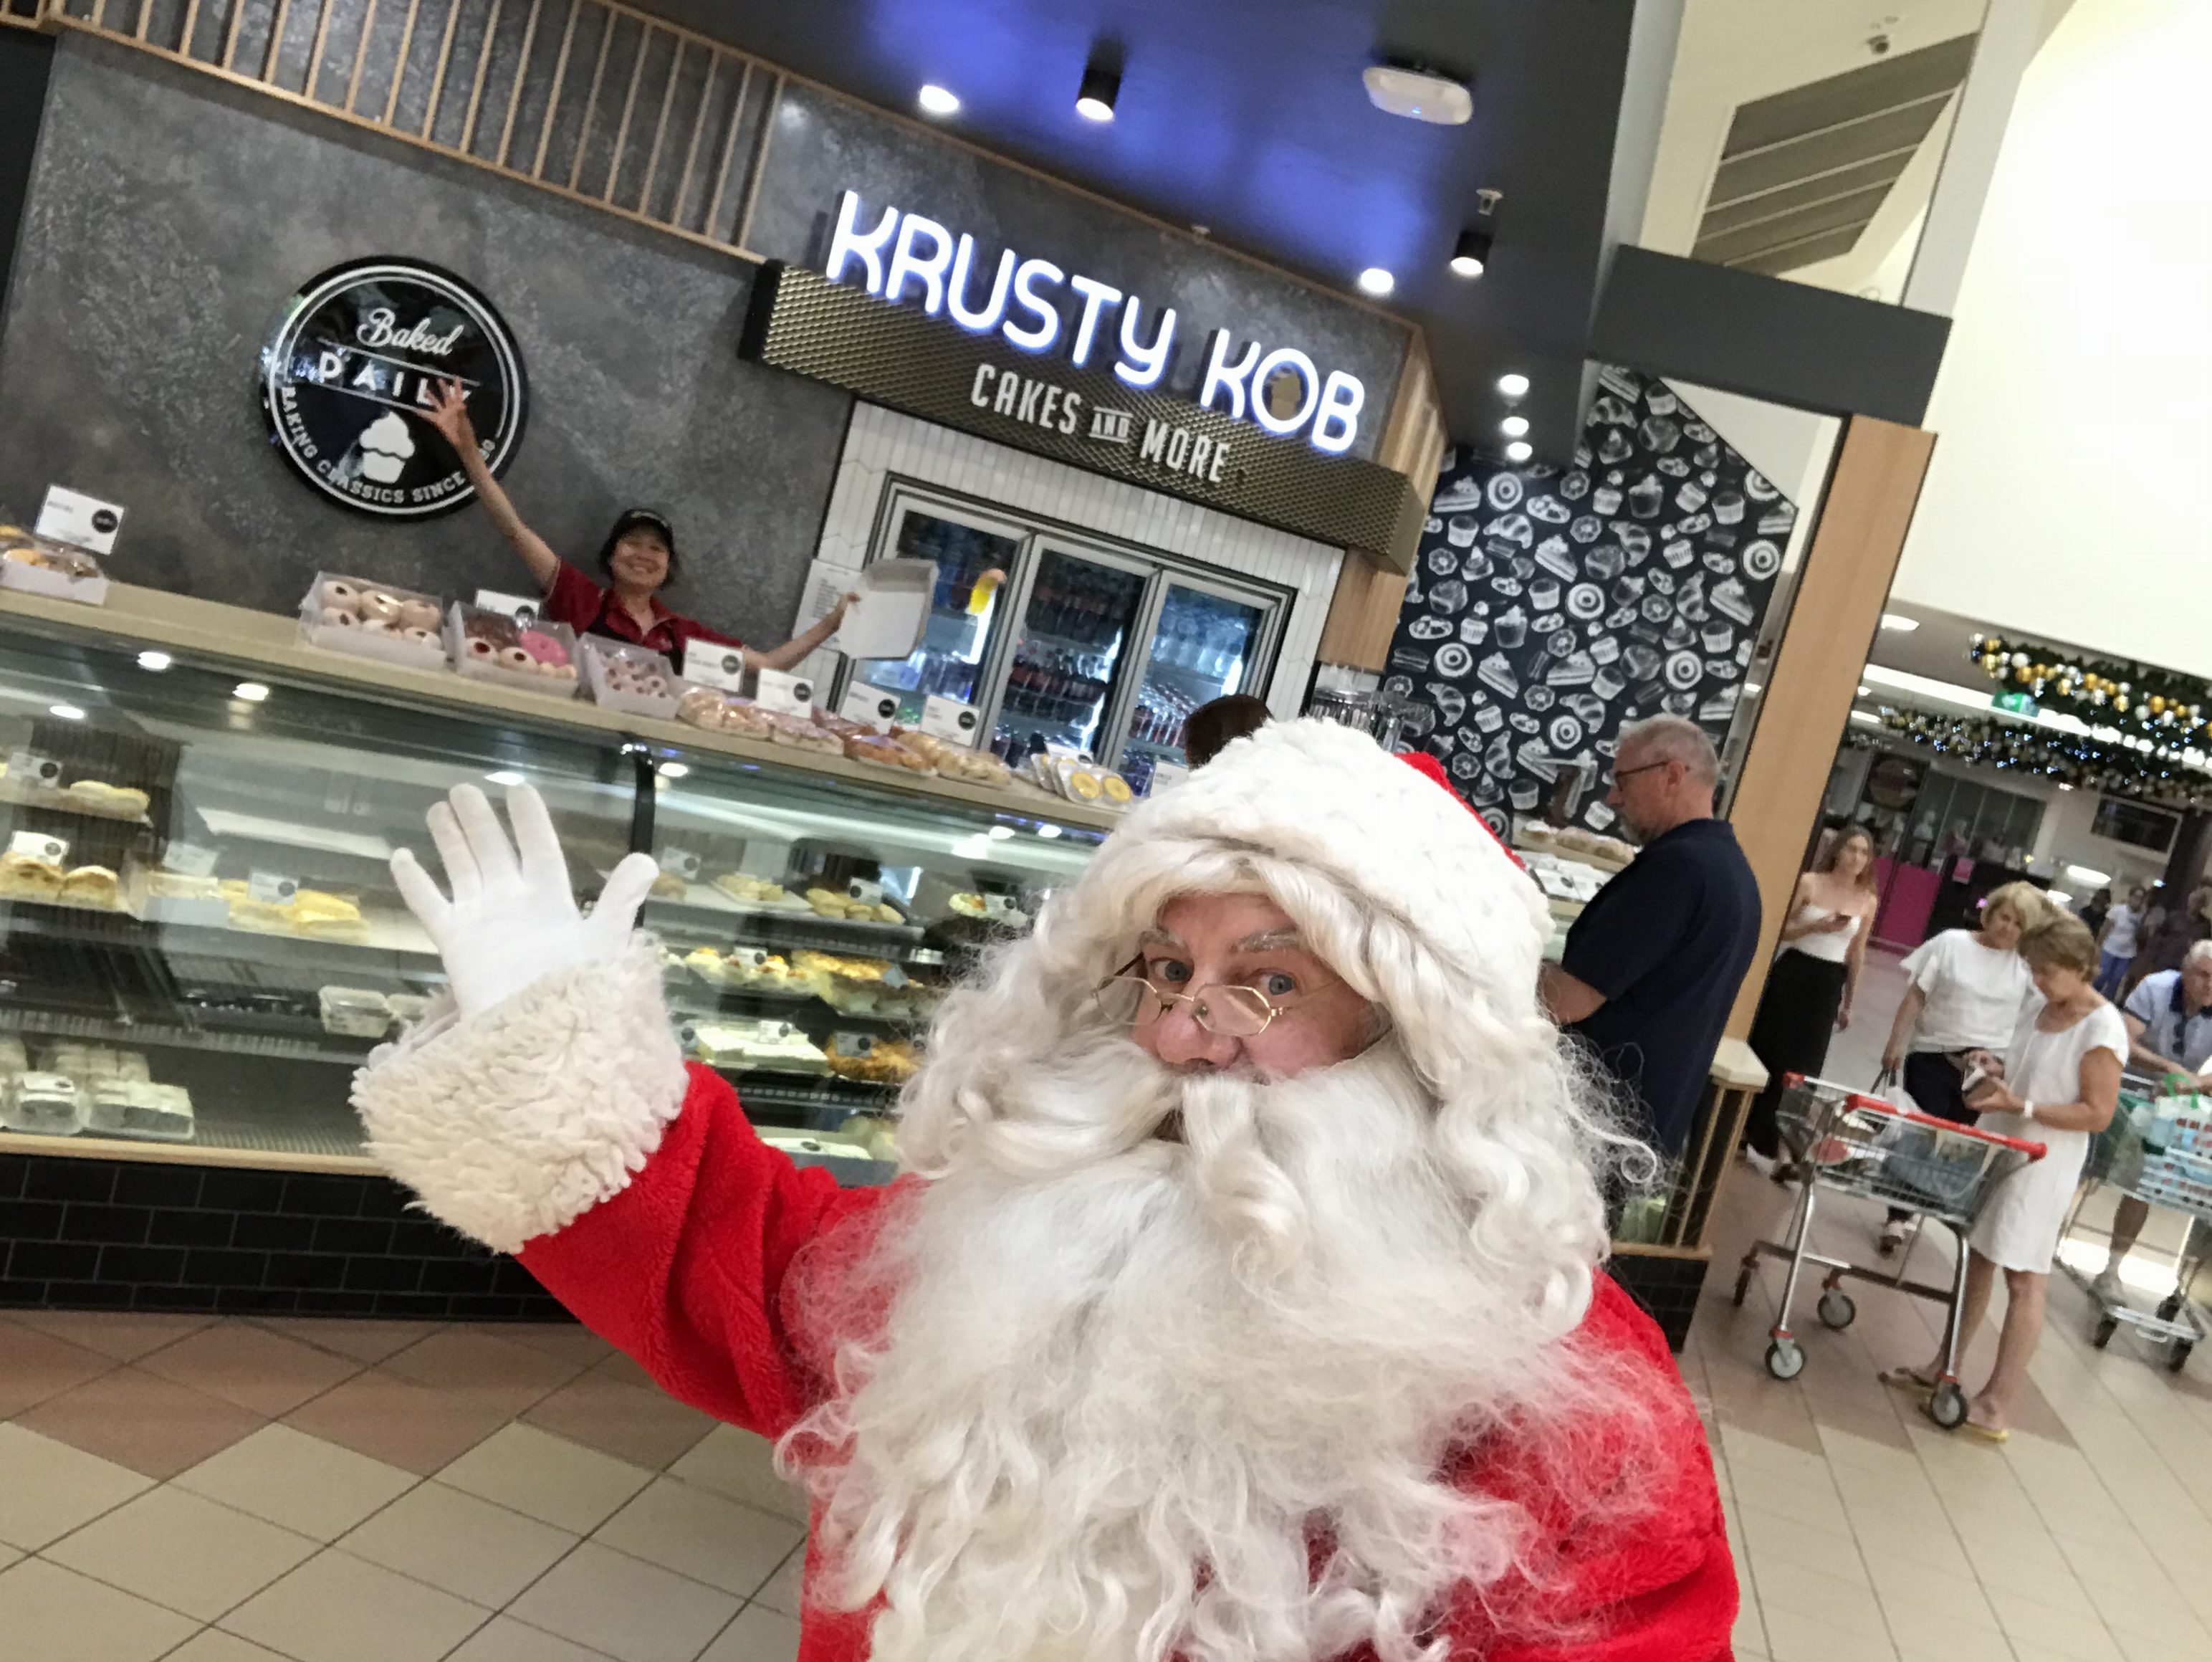 Santa enjoys the baking from Krusty Kob